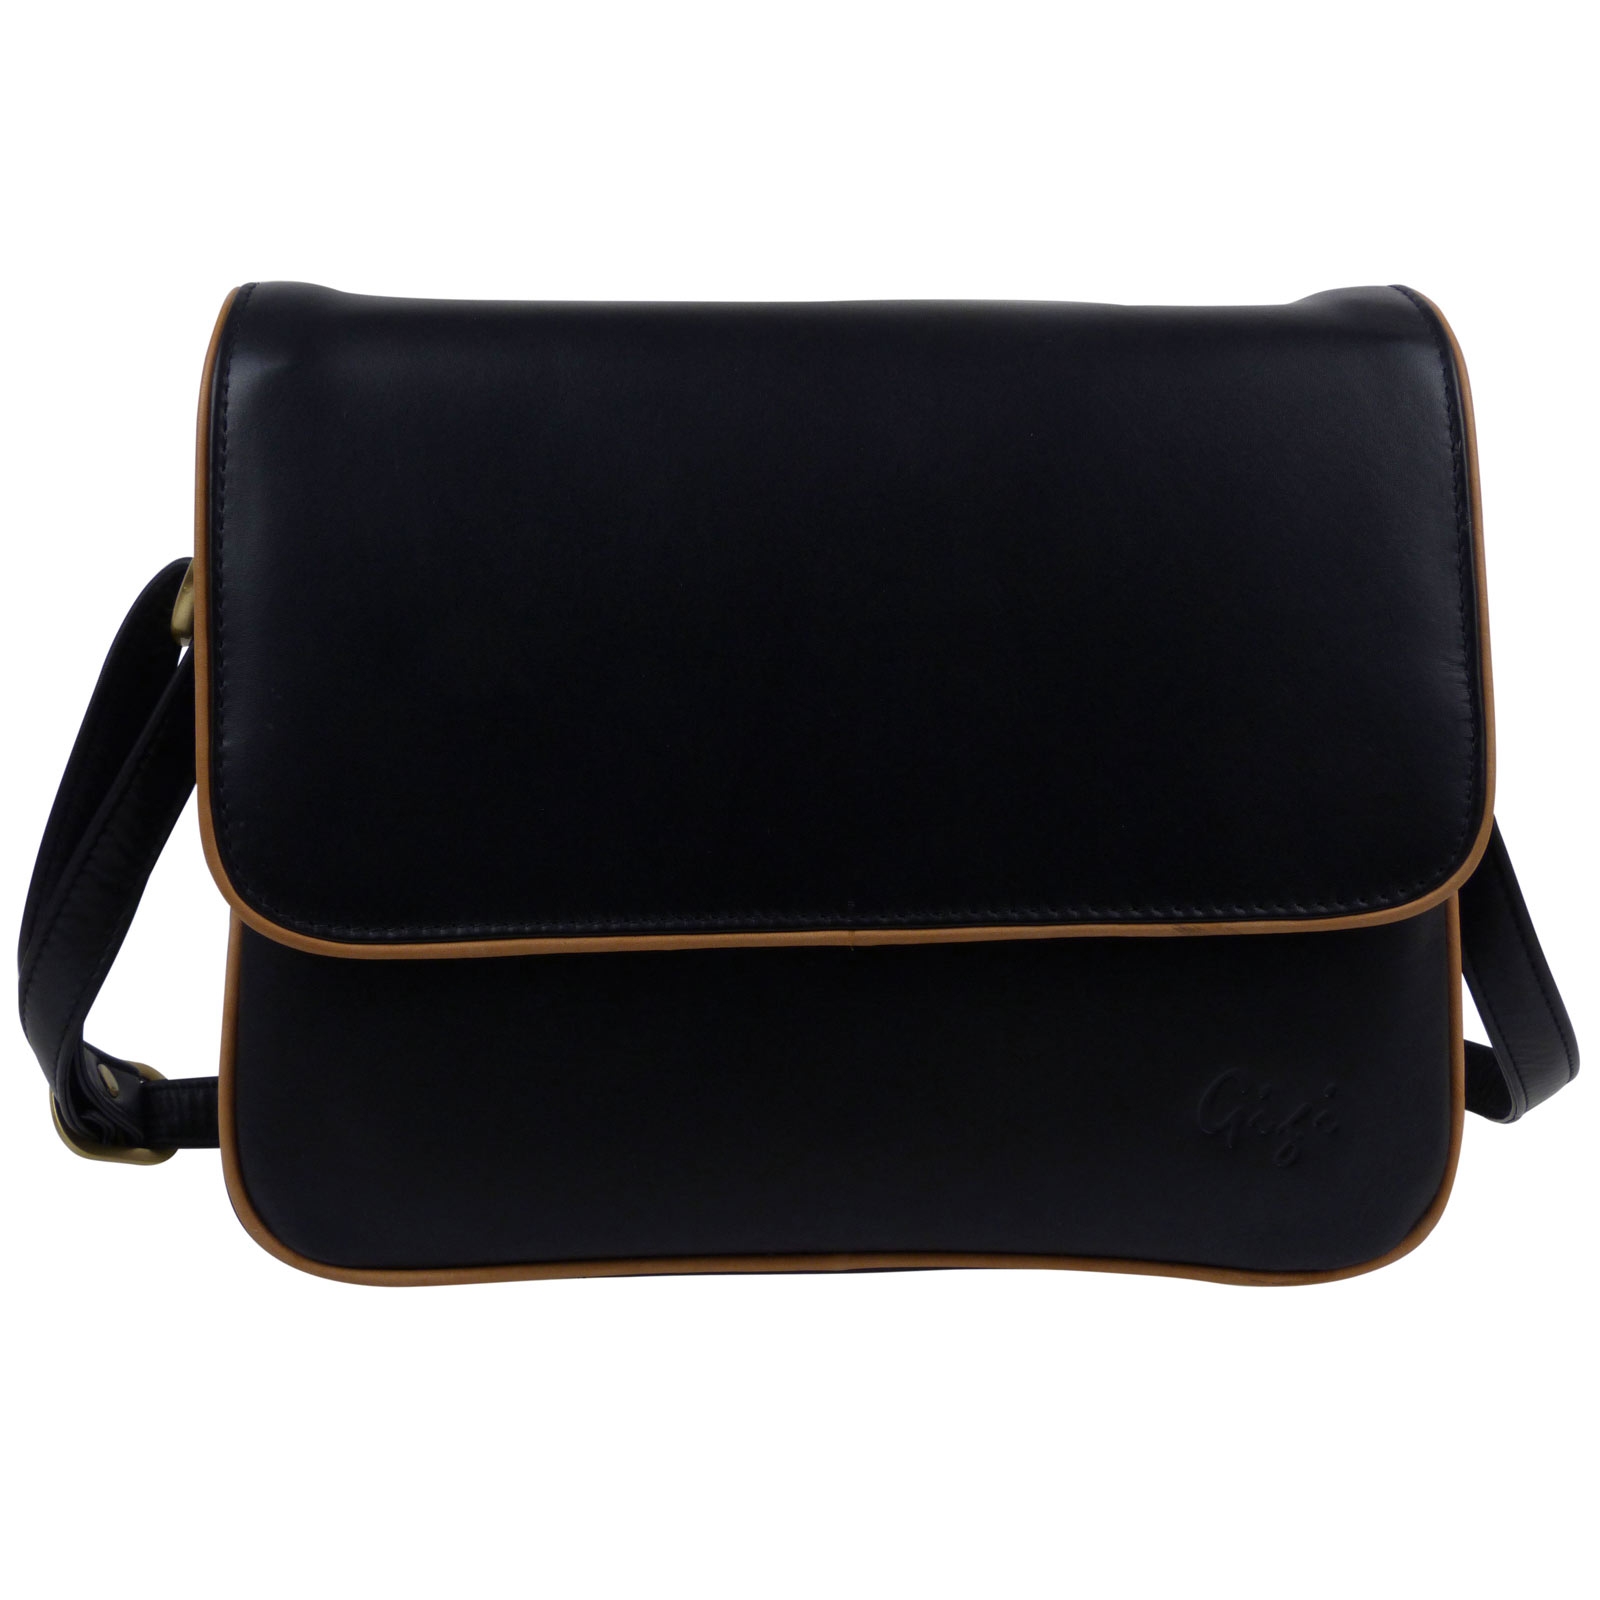 GIGI - Women's Leather Flap Over Cross Body Handbag - Shoulder Bag wit –  The Real Handbag Shop